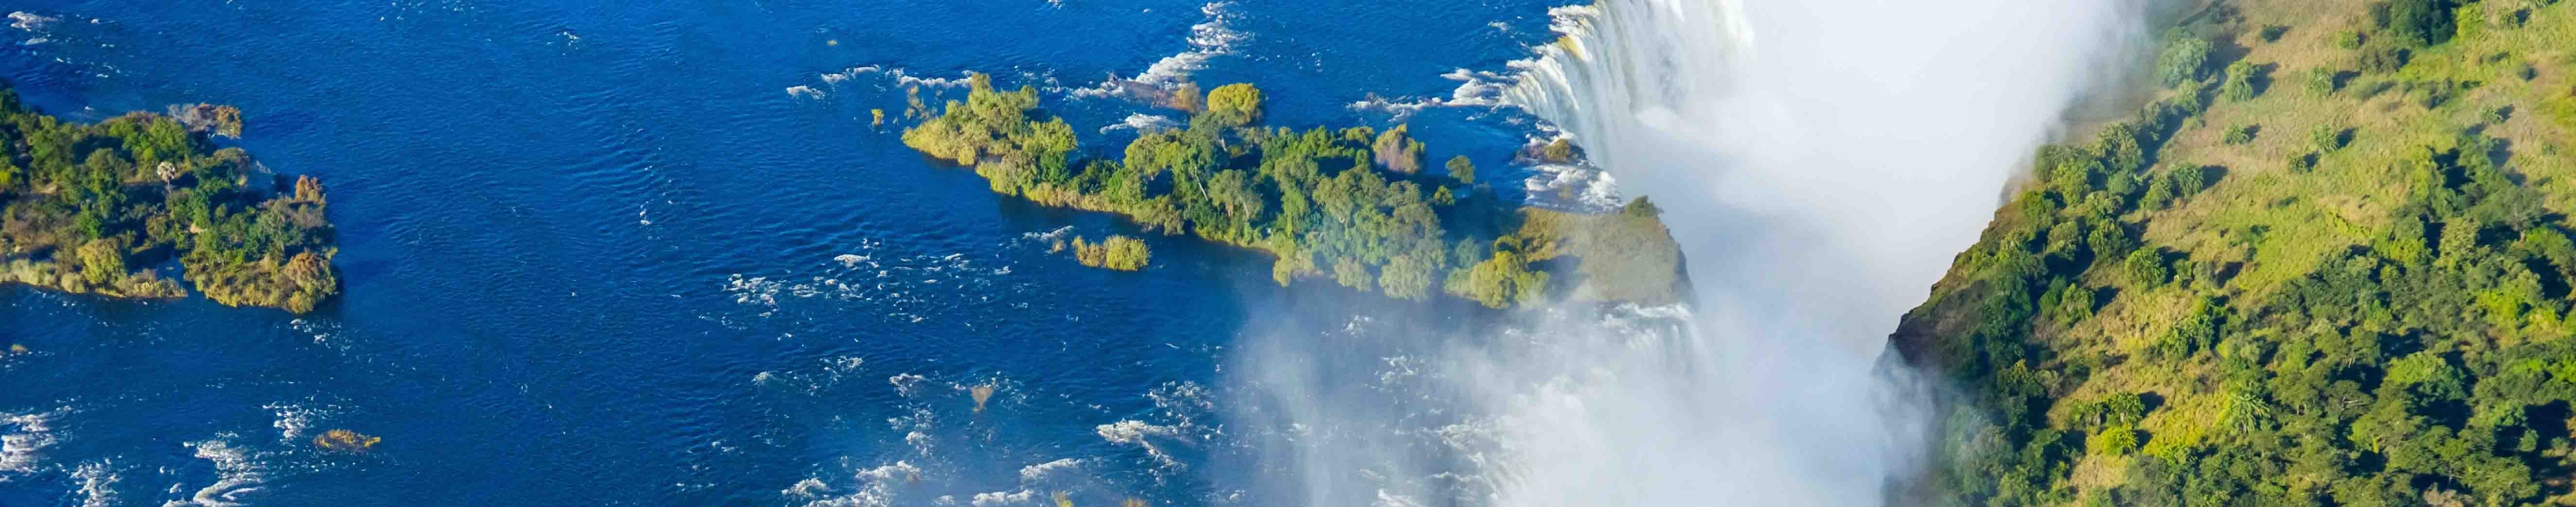 Africa Victoria falls waterfall on Zambezi river